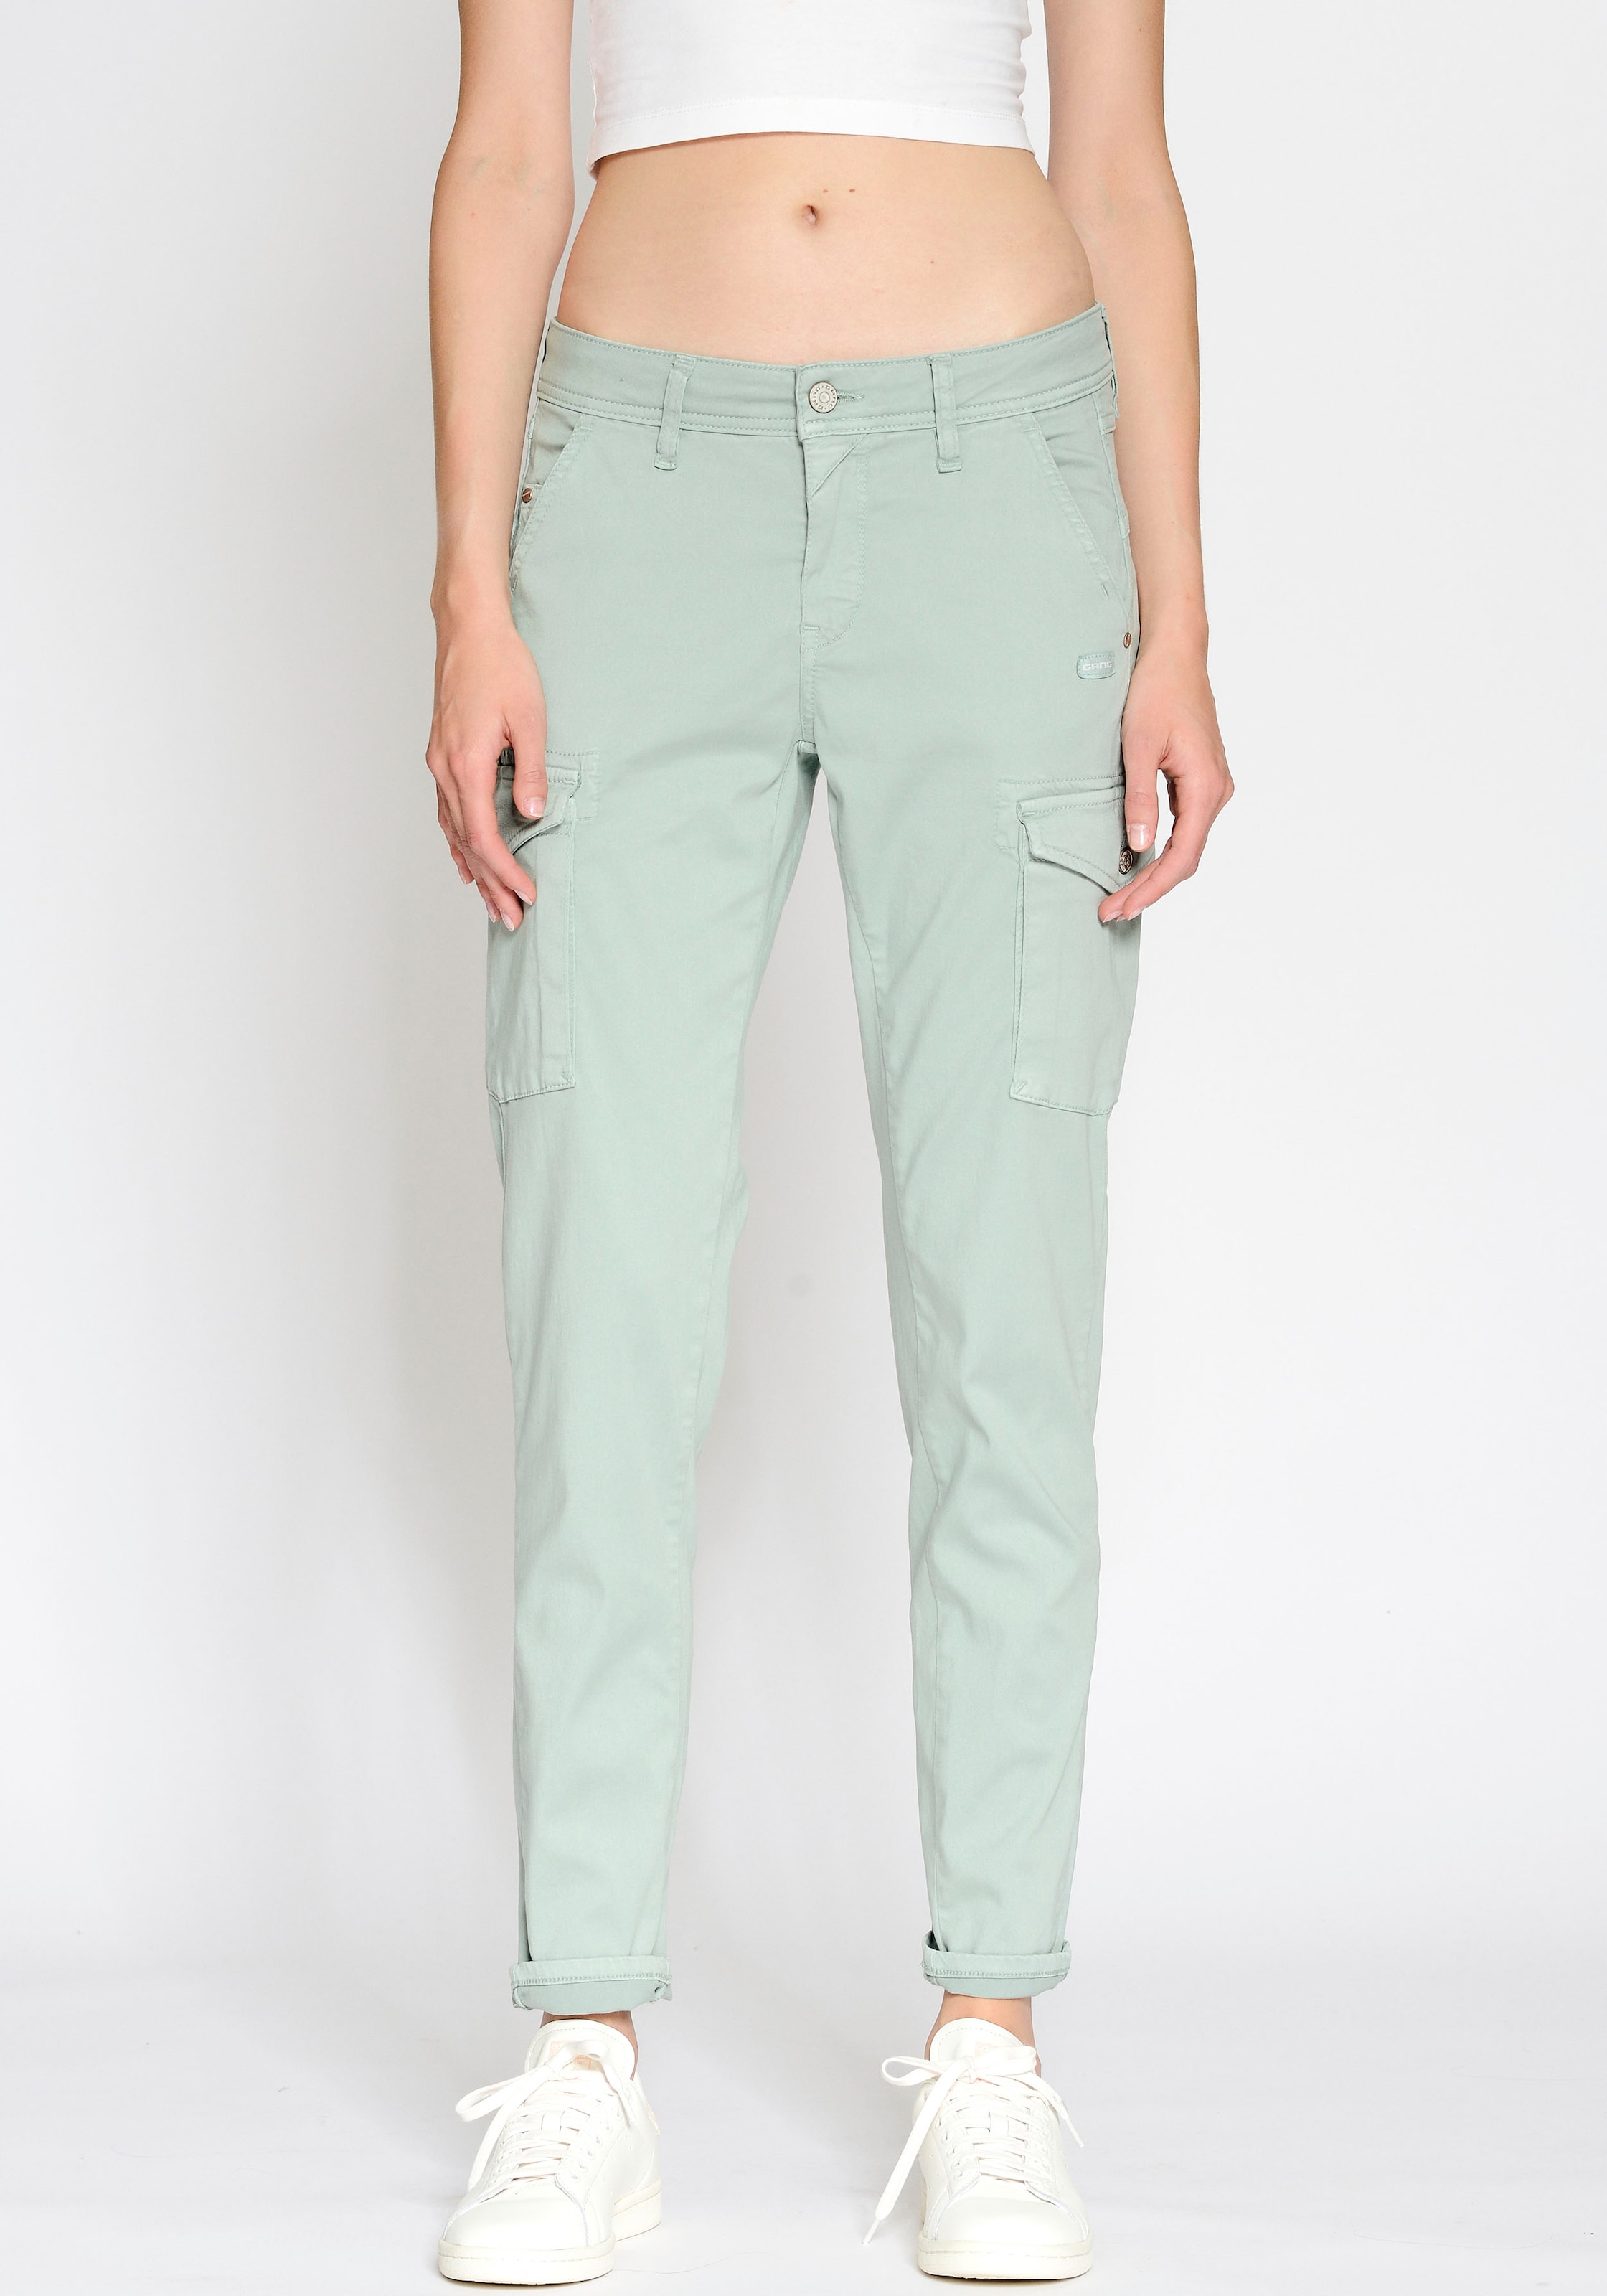 Caprijeans & 3/4 Jeans für Damen - praktisch und bequem | Stretchjeans